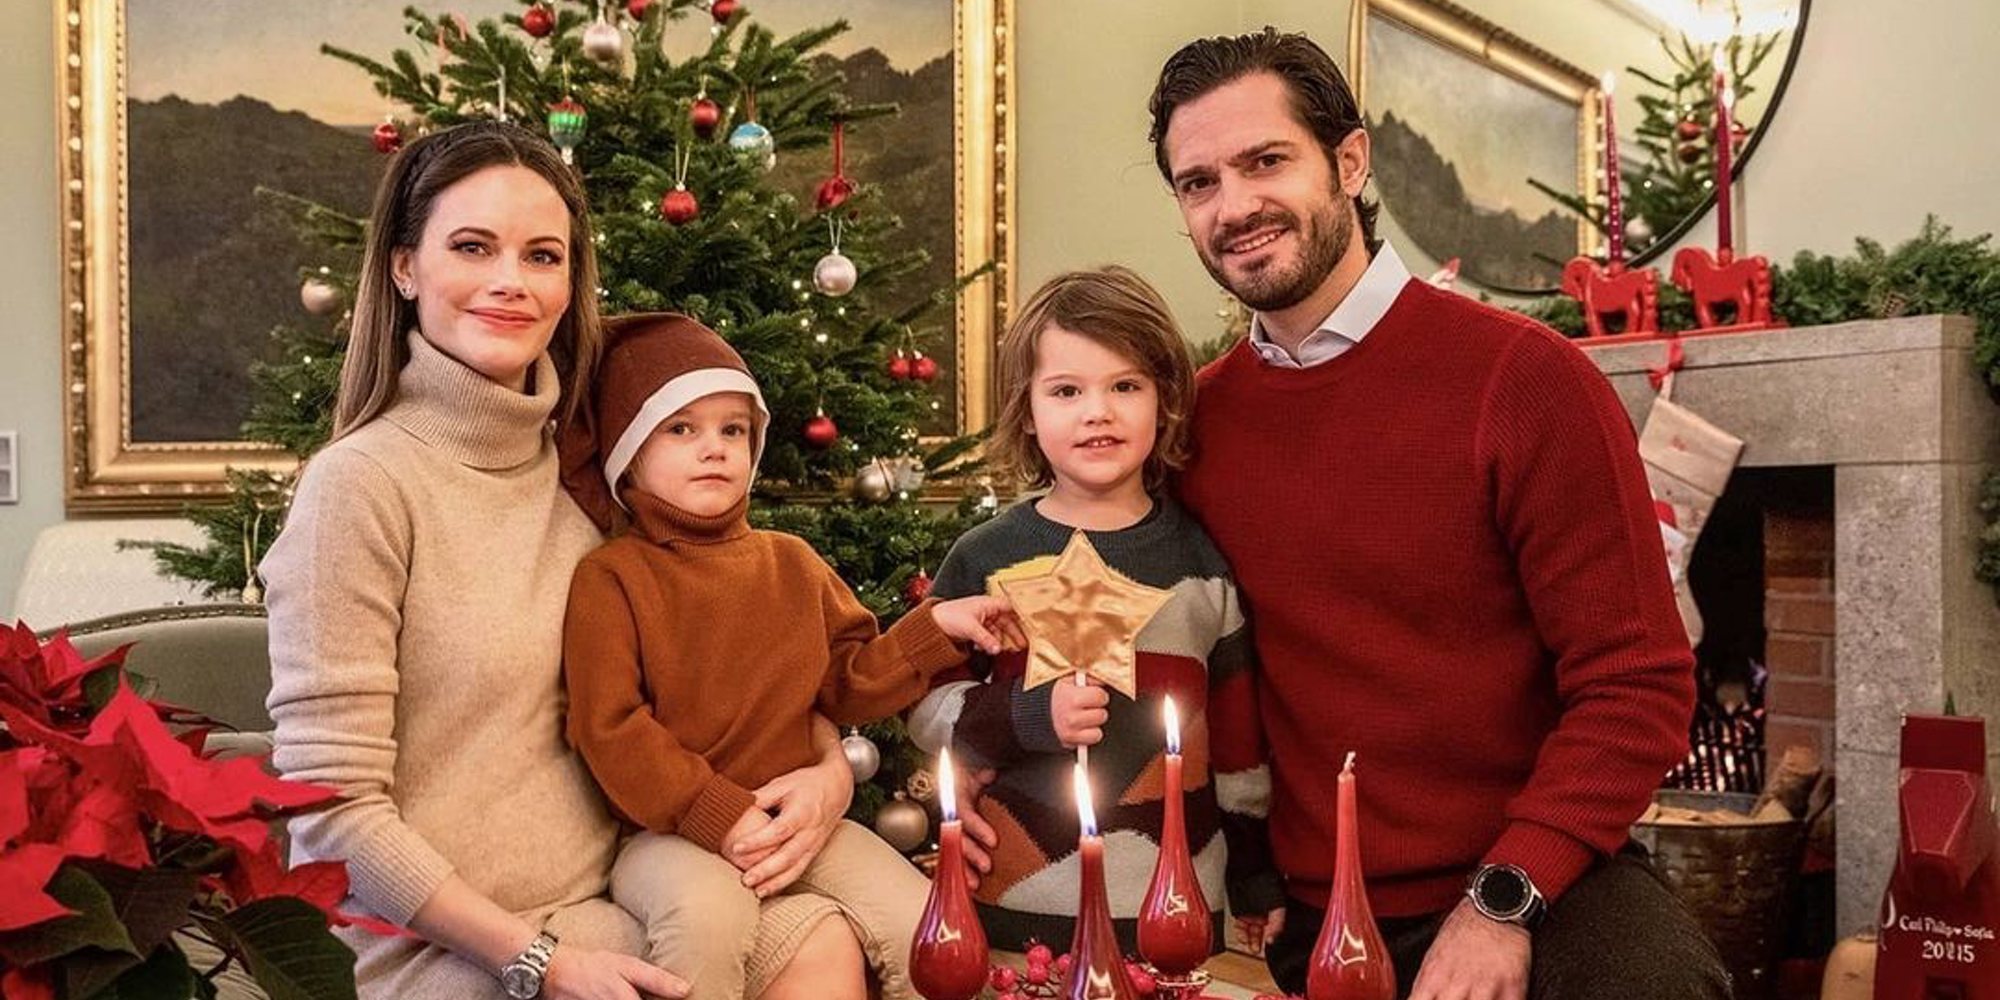 La tierna felicitación navideña de Carlos Felipe y Sofía de Suecia con sus hijos como protagonistas